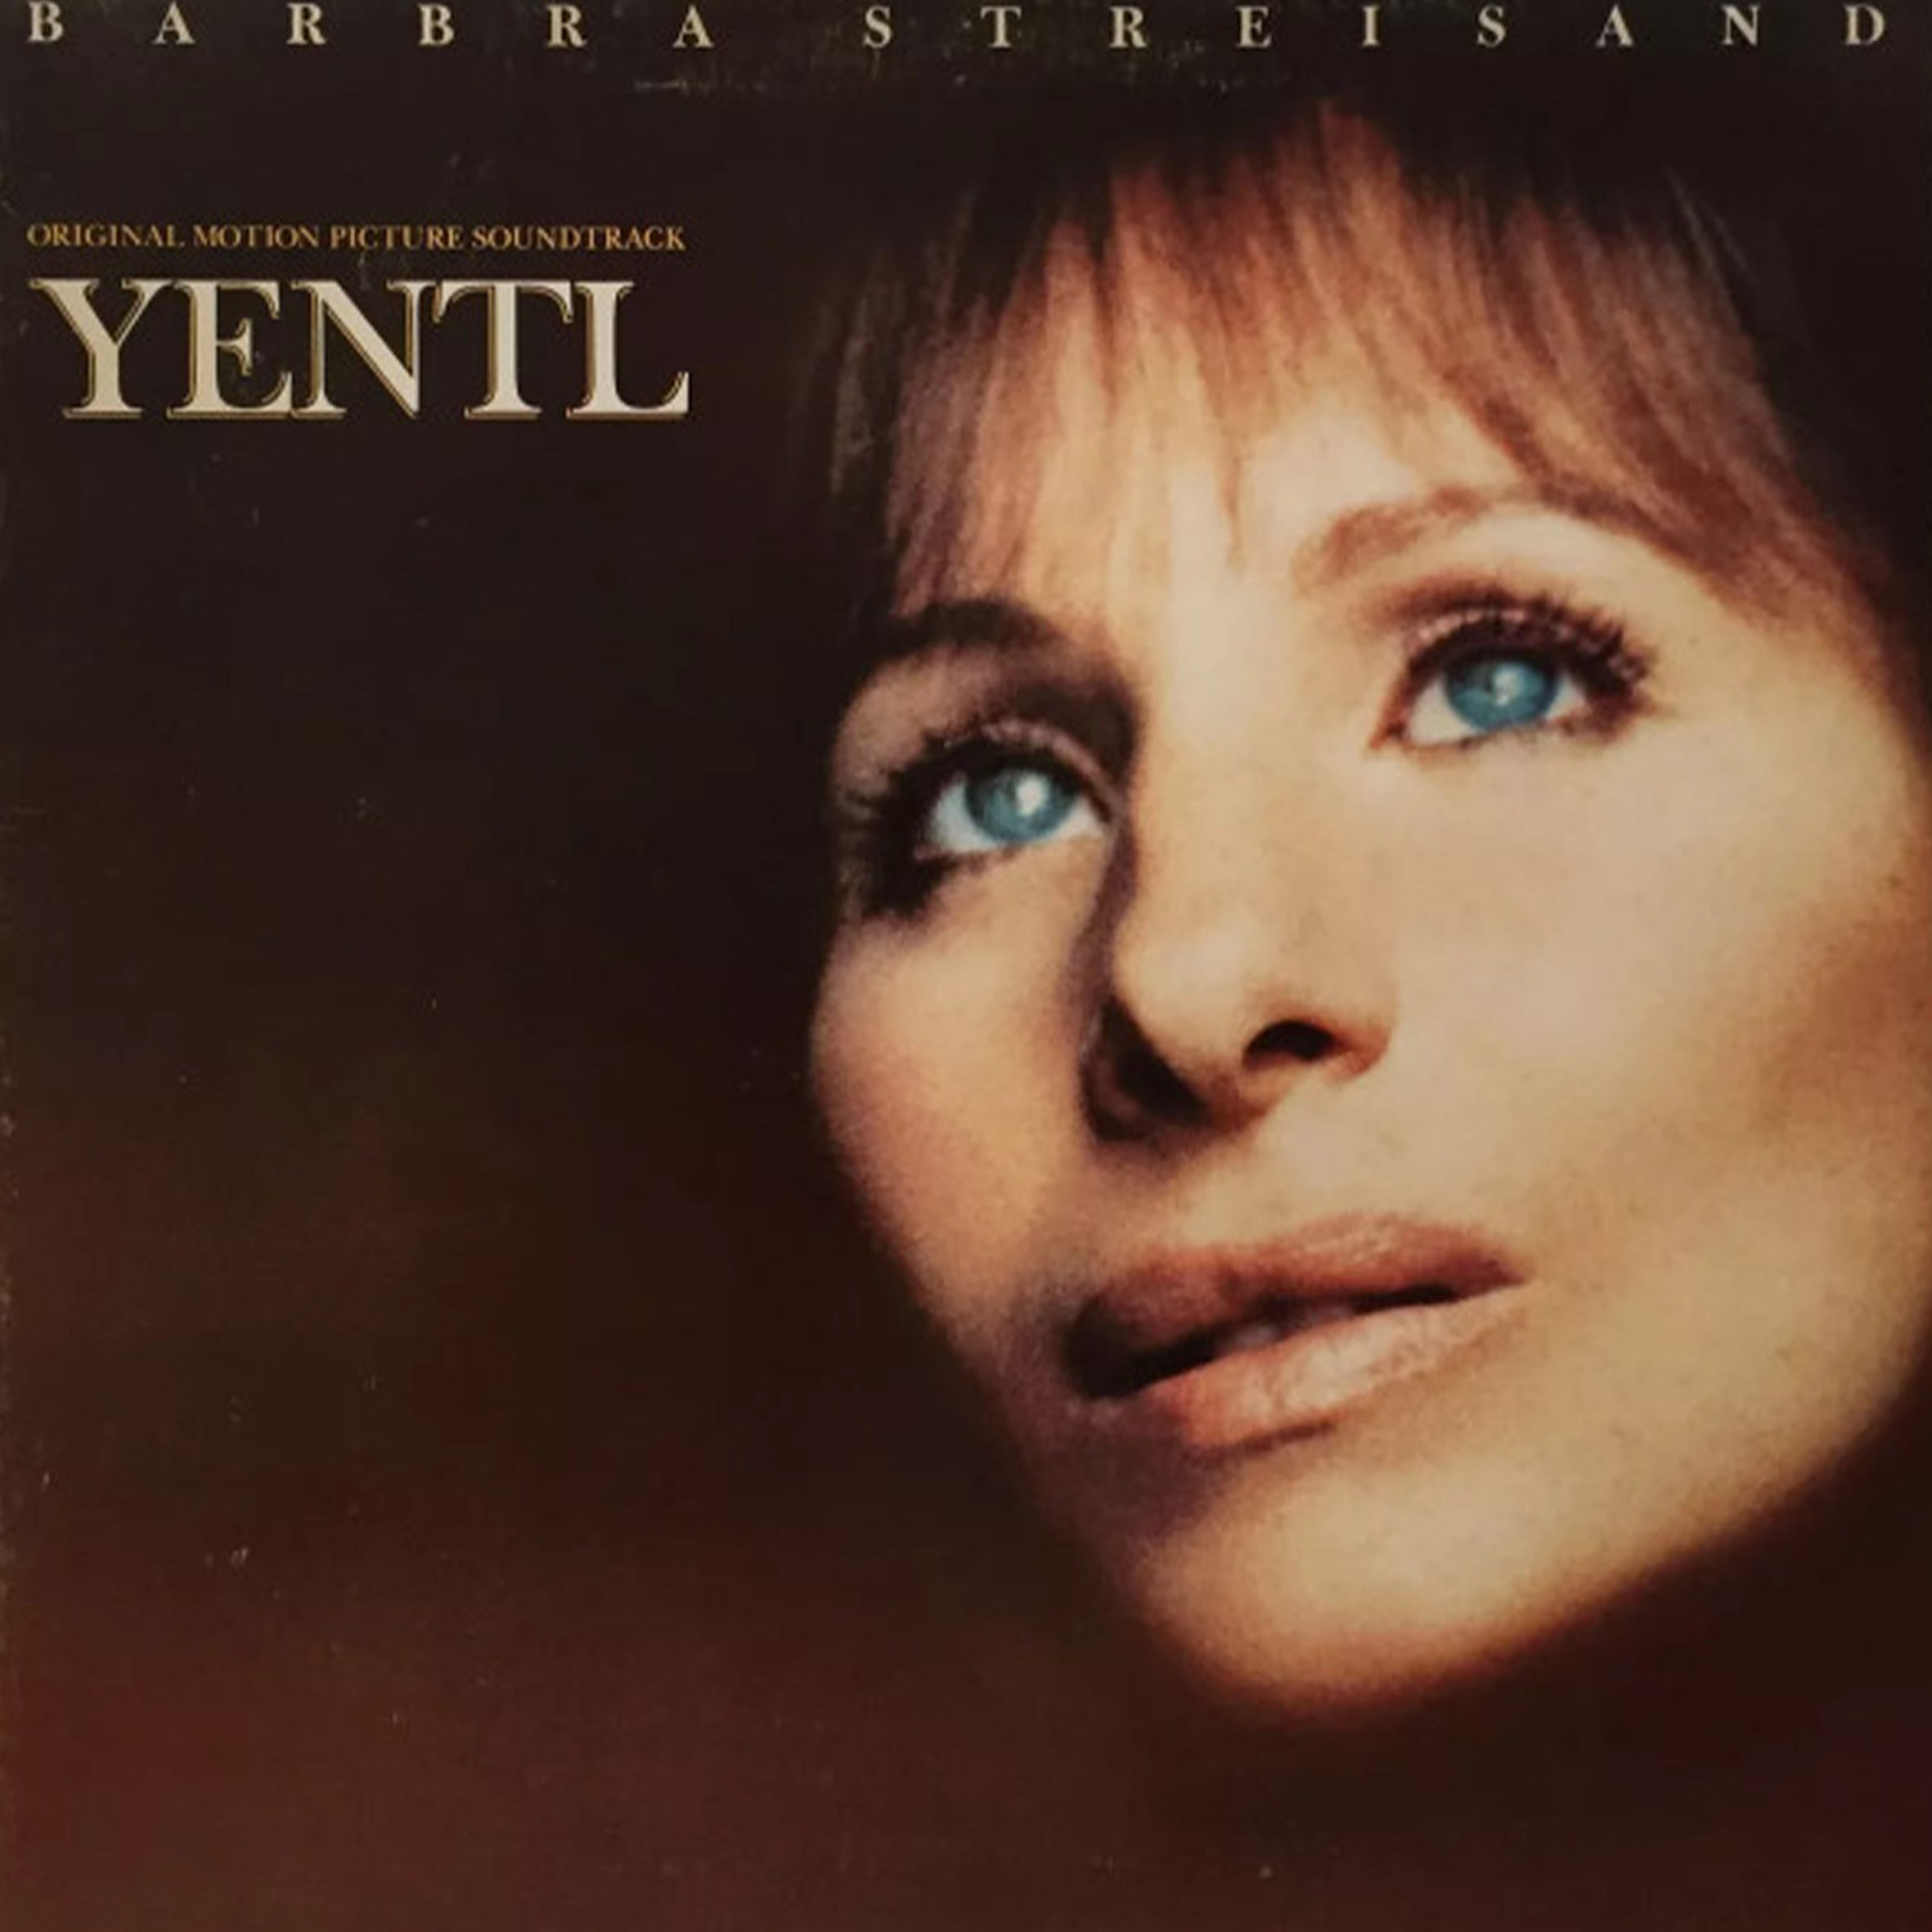 Vinil - Barbra Streisand - Yentl - Original Motion Picture Soundtrack